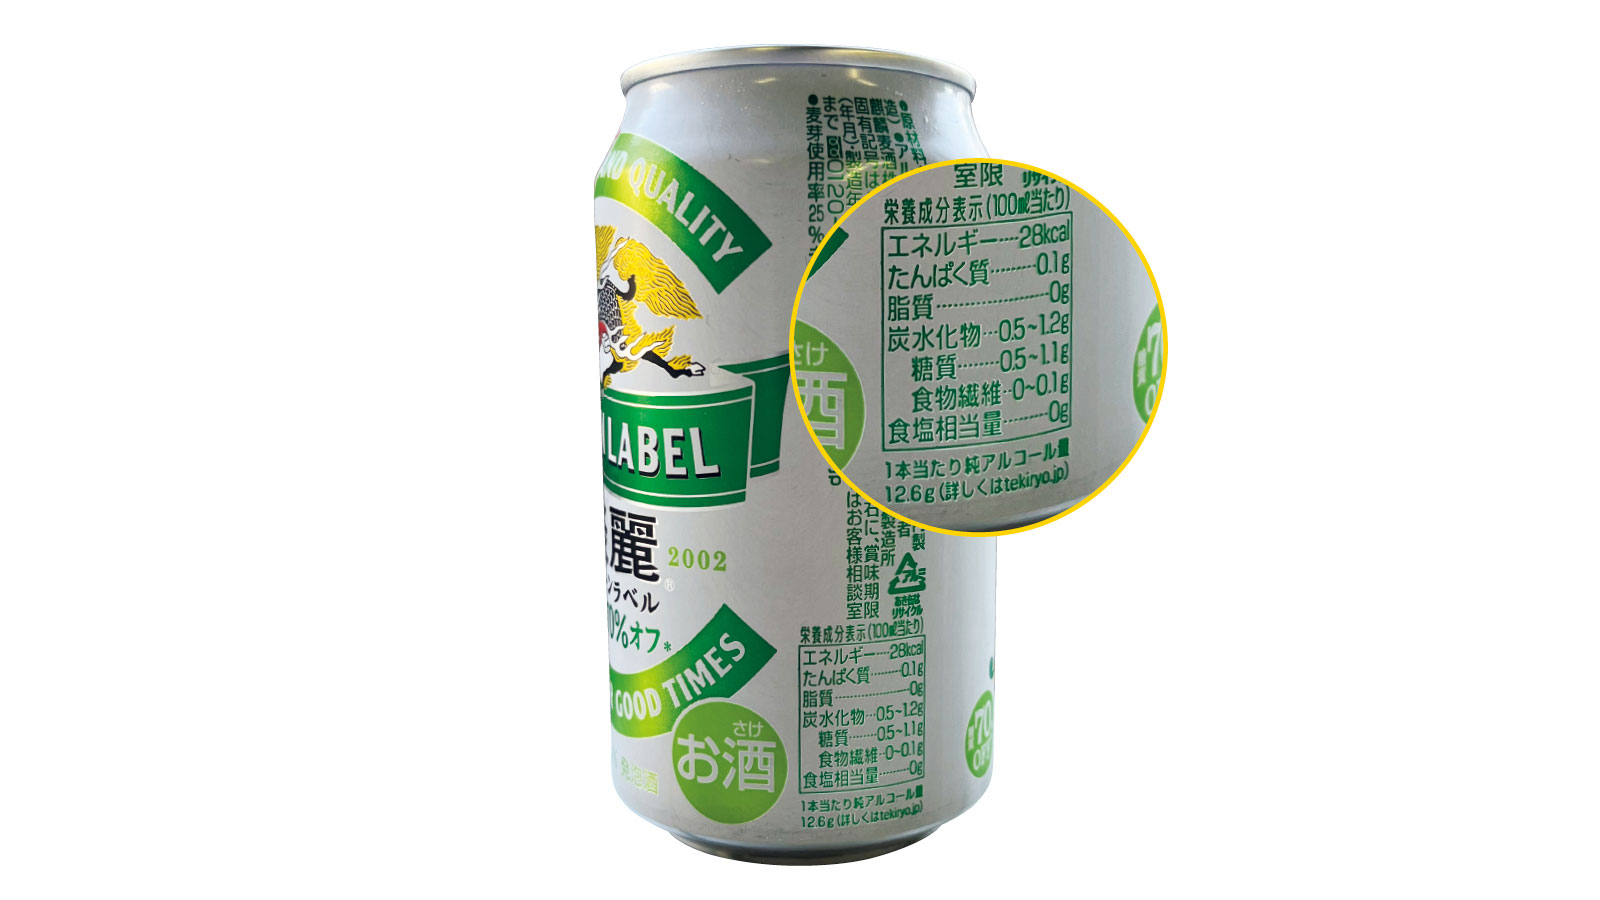 キリンビール 発泡酒 淡麗グリーンラベル 350mLでアルコールは12.6g アルコール 適量